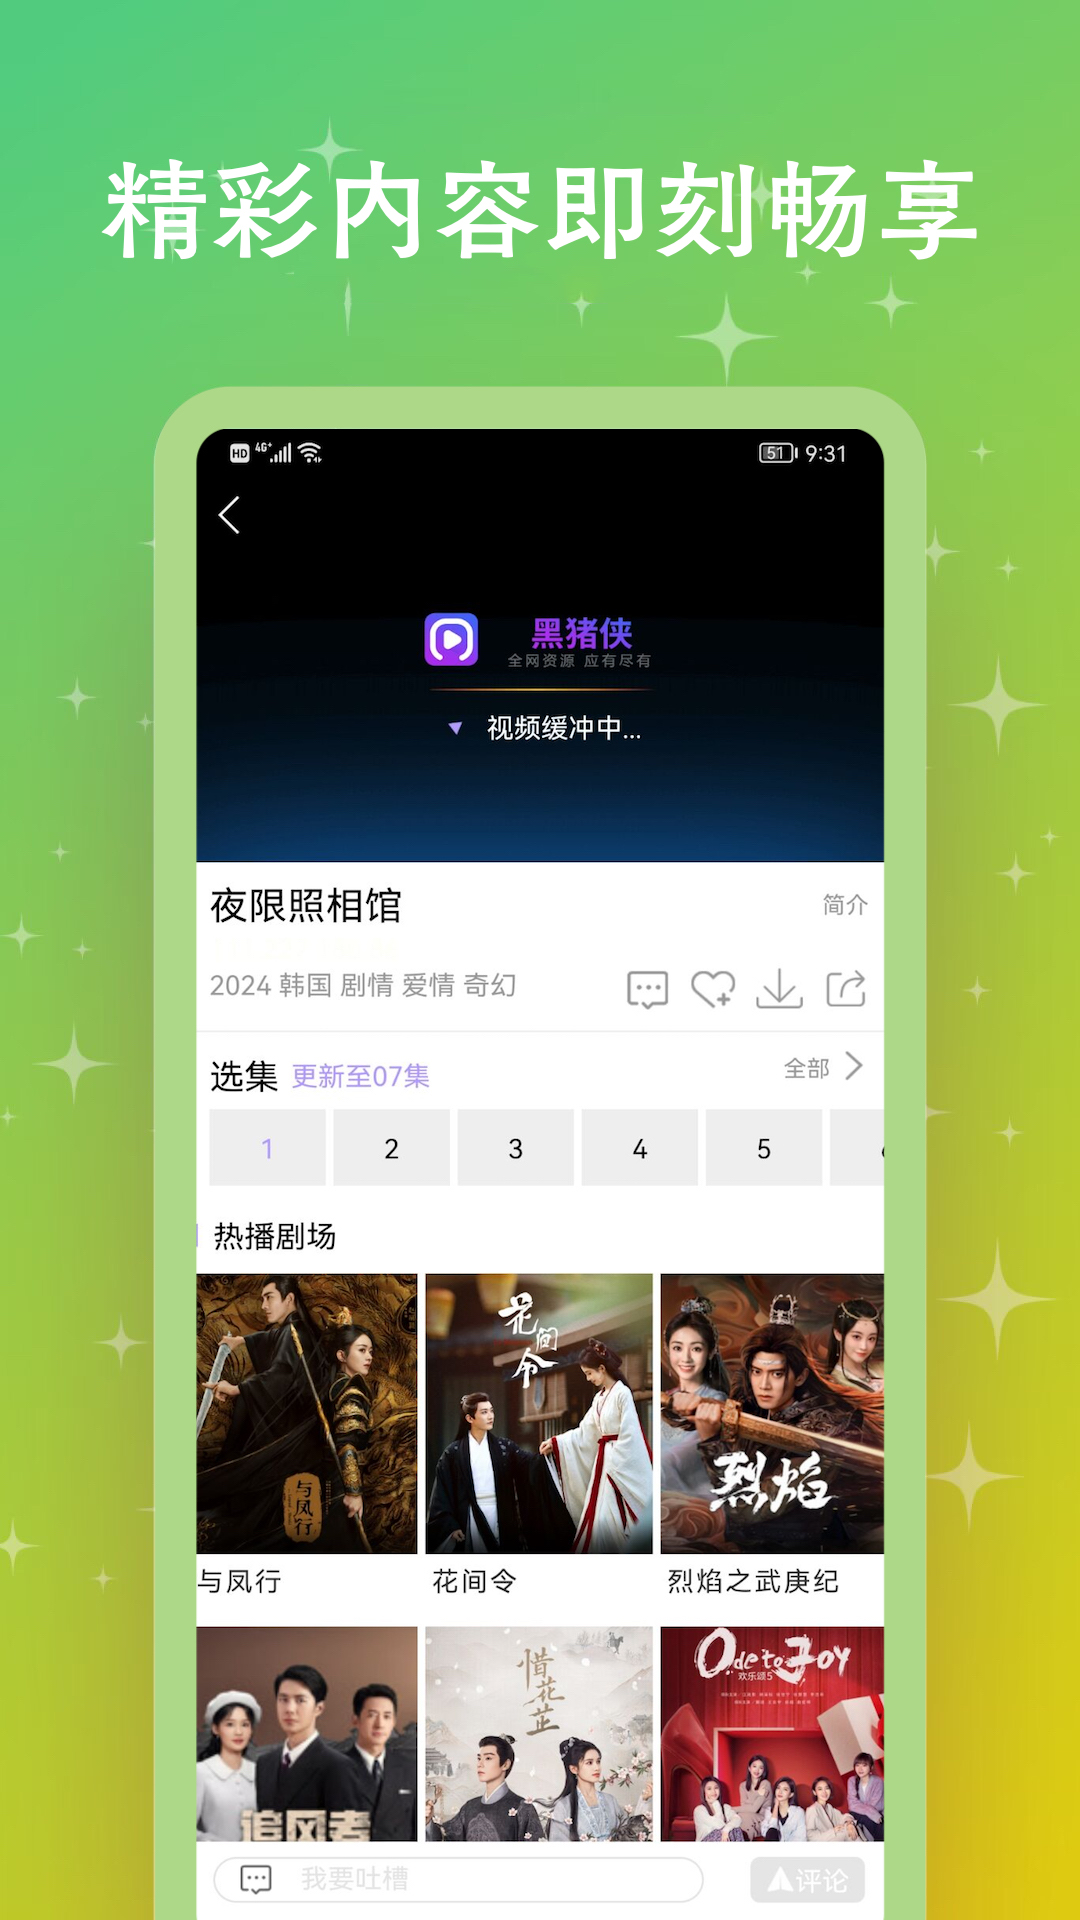 黑猪侠影视app官方下载2.1版本截图2: